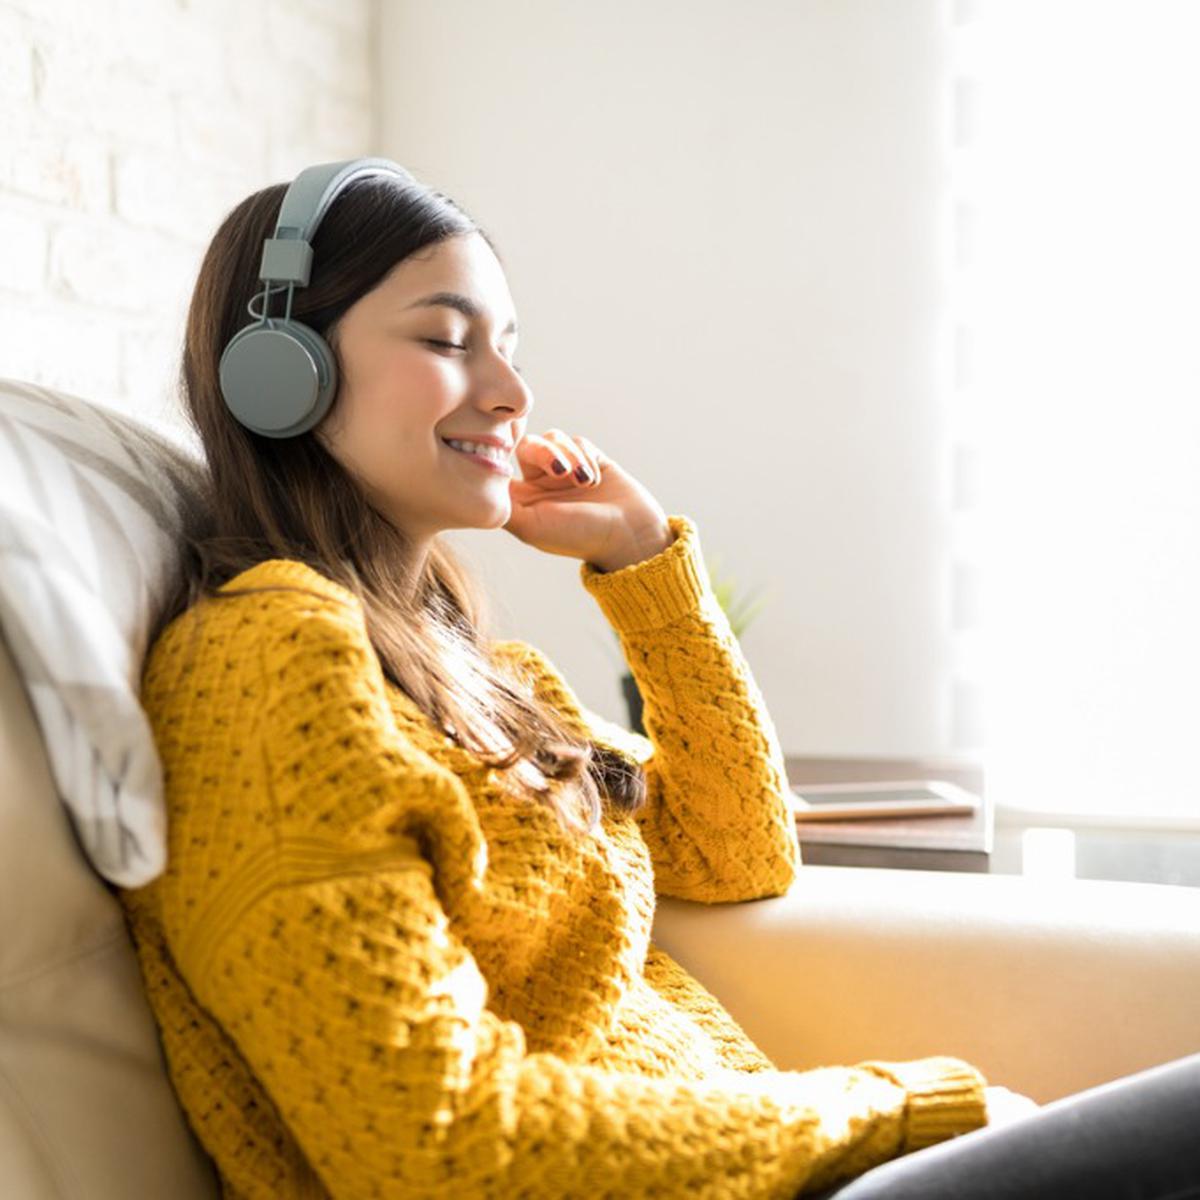 Escuchar música relajante mejora la salud